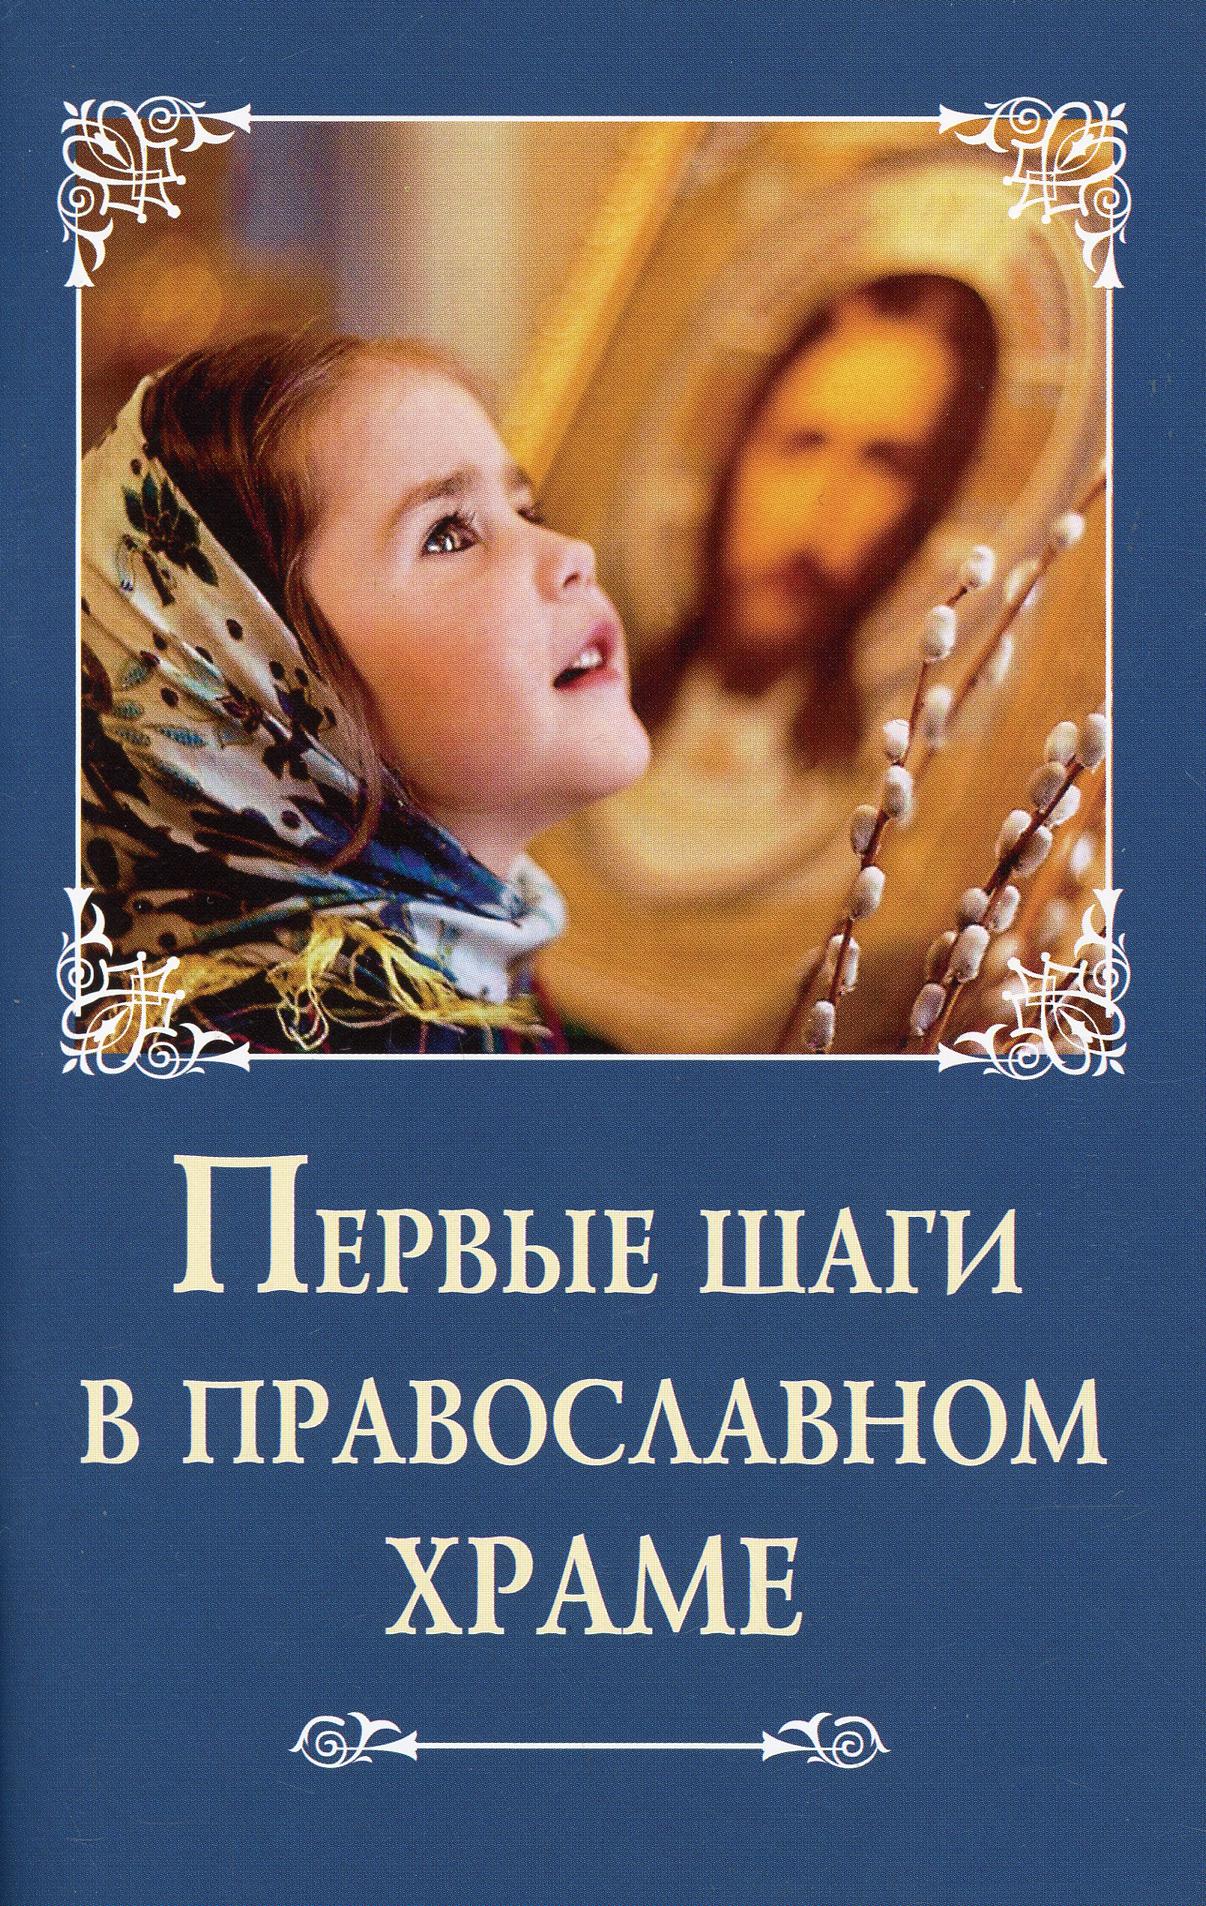 фото Книга первые шаги в православном храме сибирская благозвонница